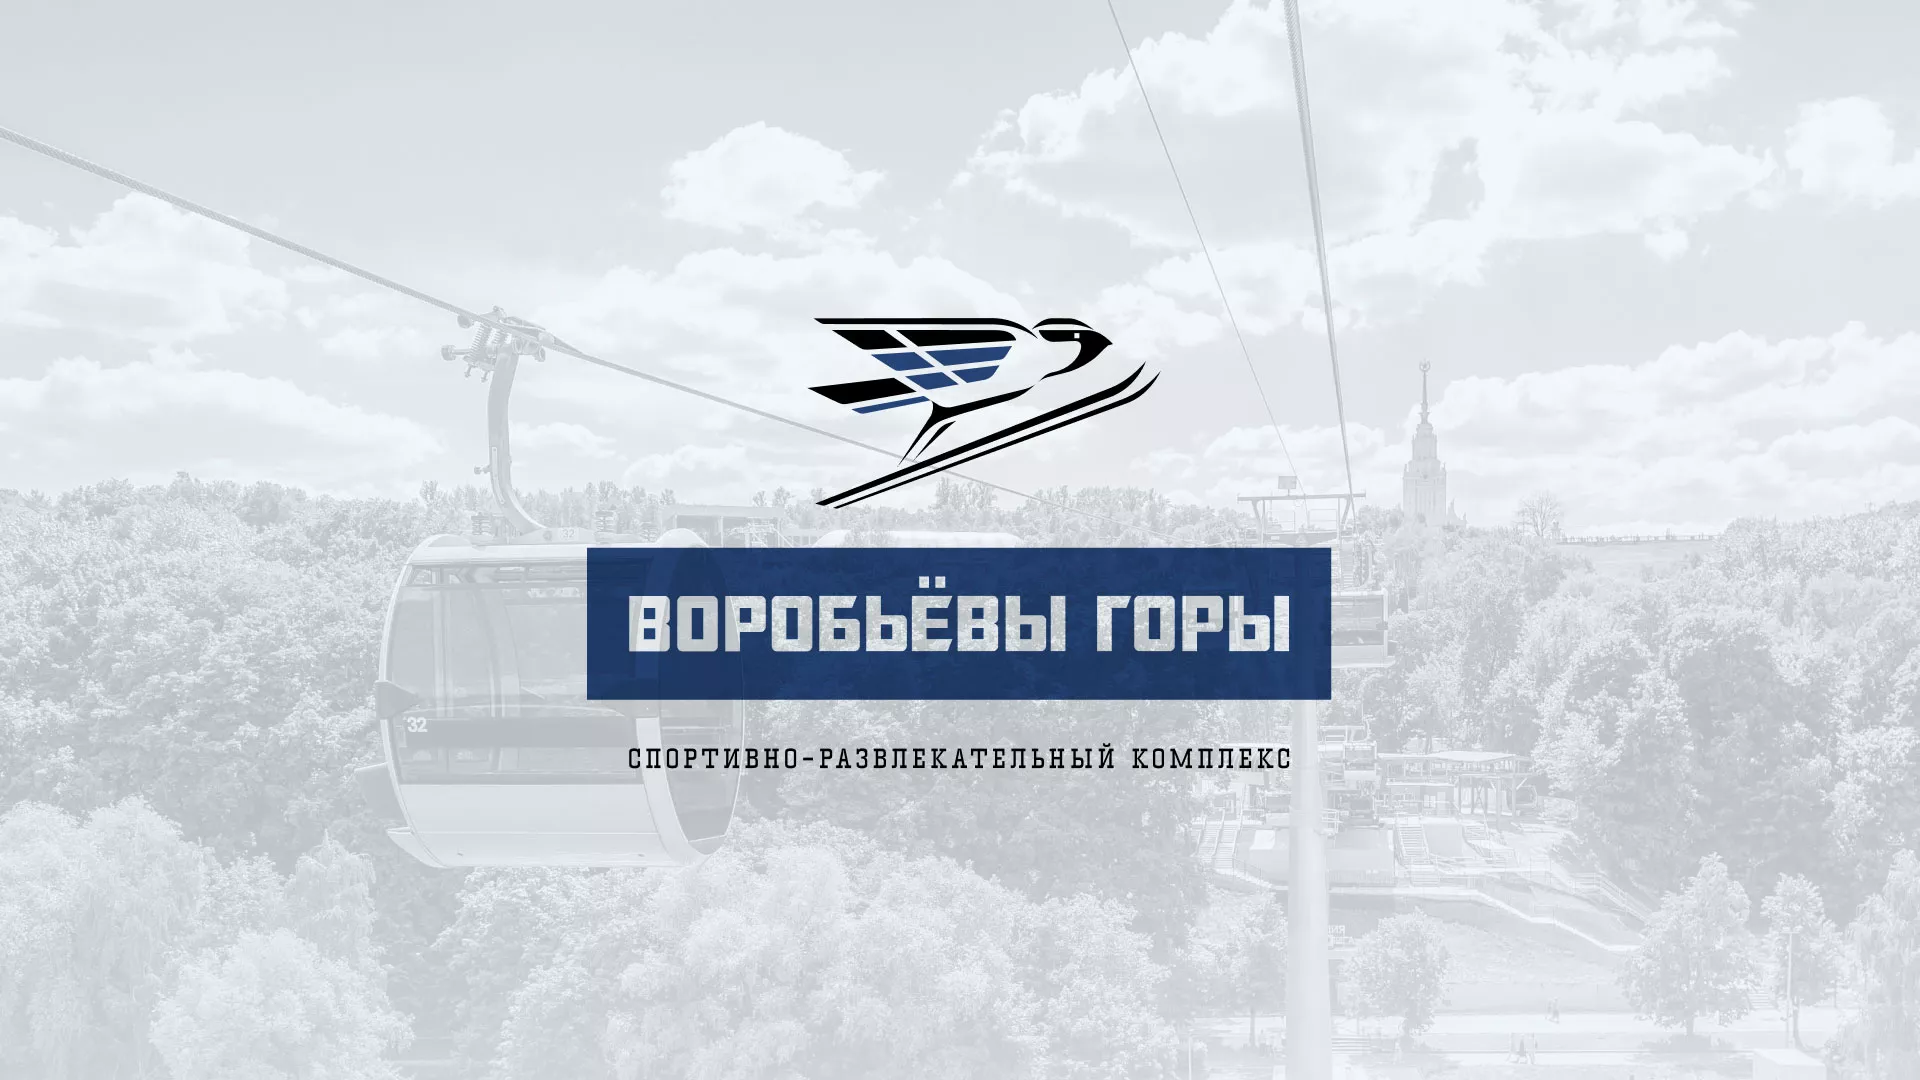 Разработка сайта в Болотном для спортивно-развлекательного комплекса «Воробьёвы горы»